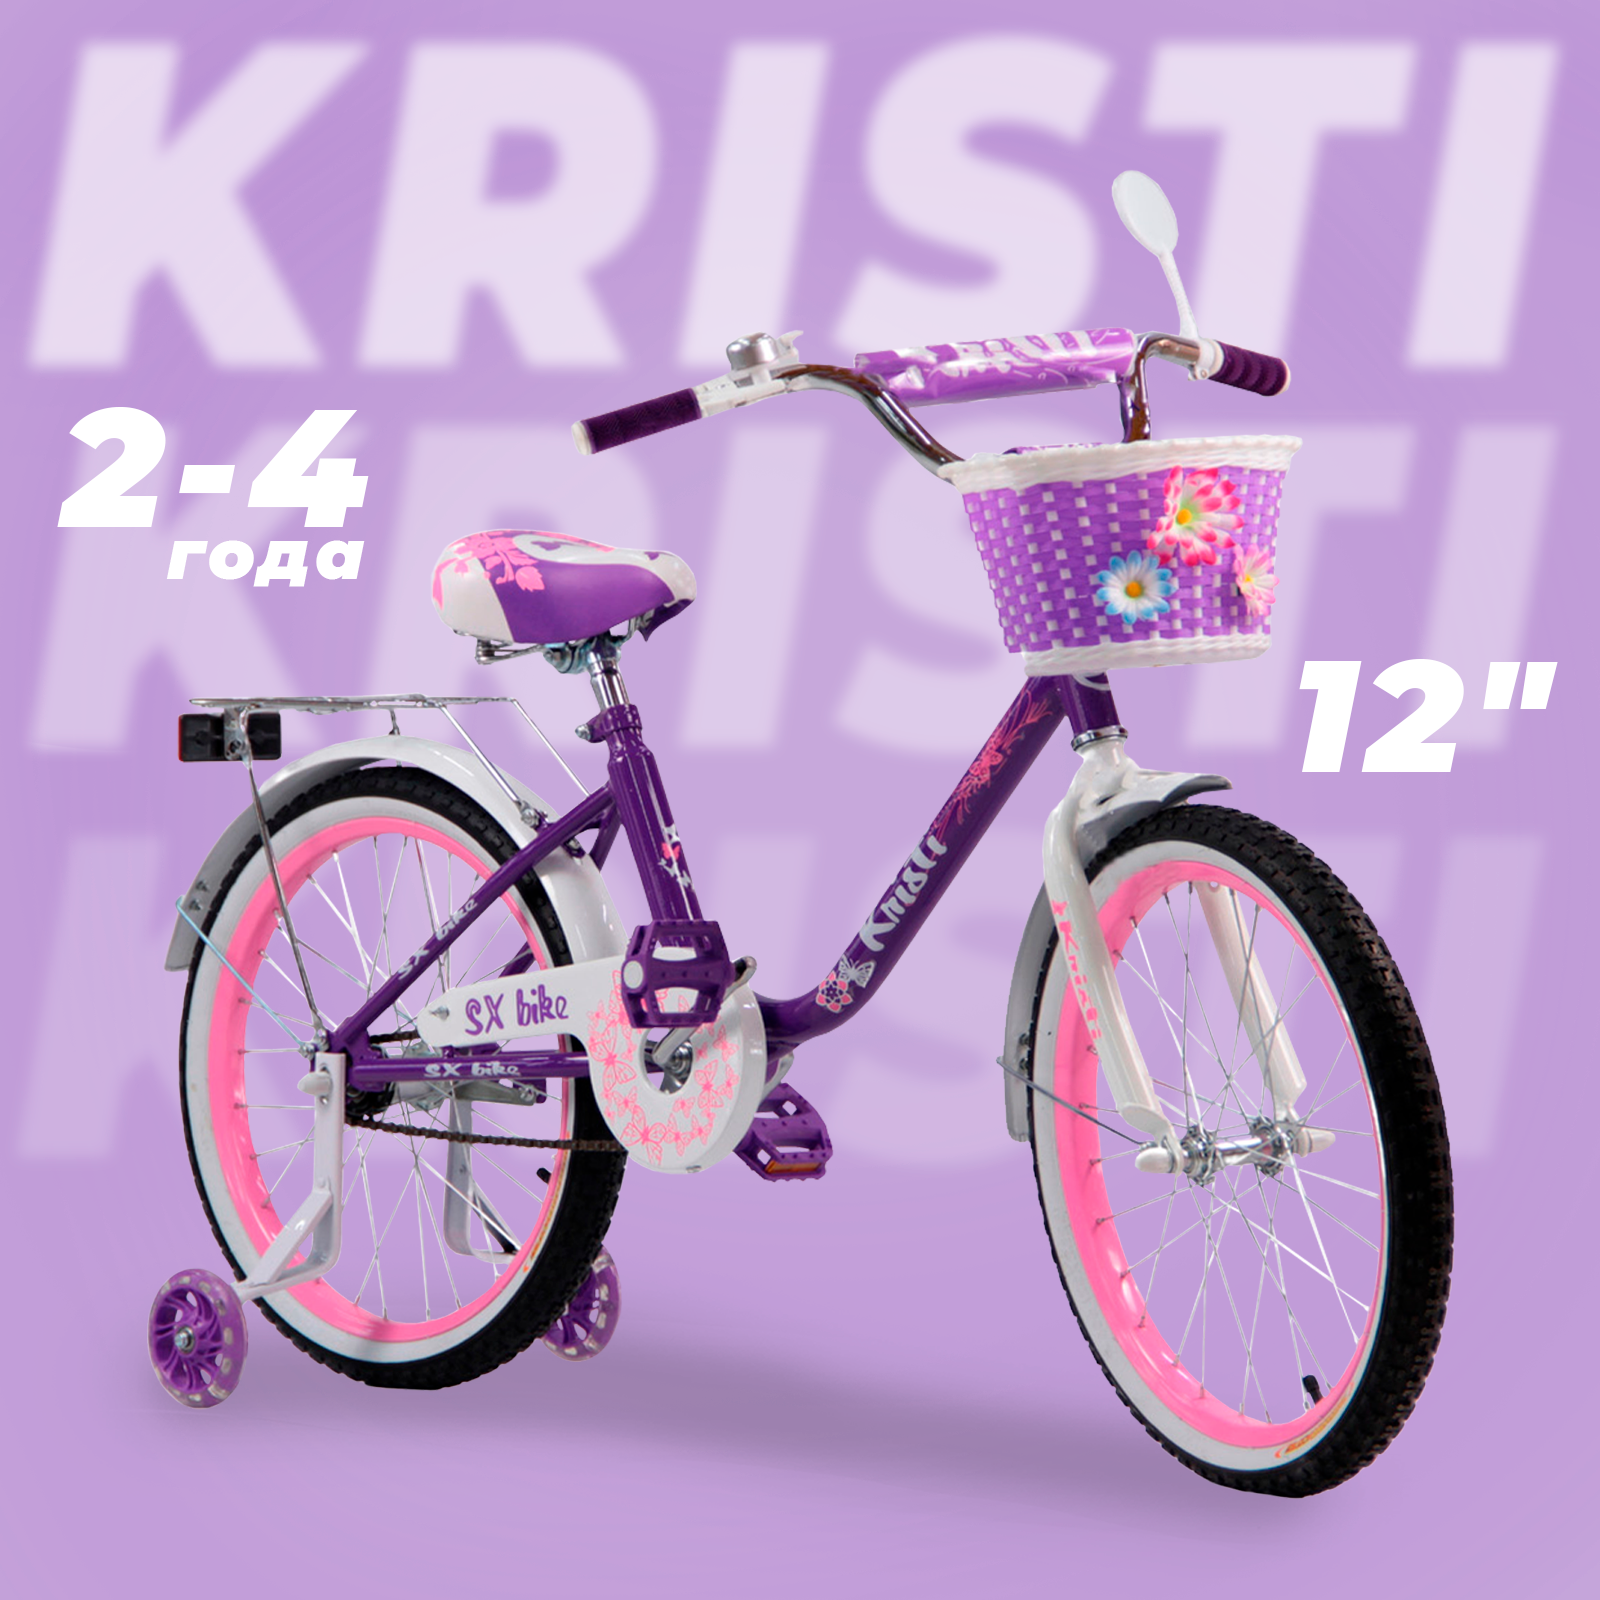 Велосипед детский Kristi 12", рост 85-100 см, 2-4 лет, цвет: фиолетовый